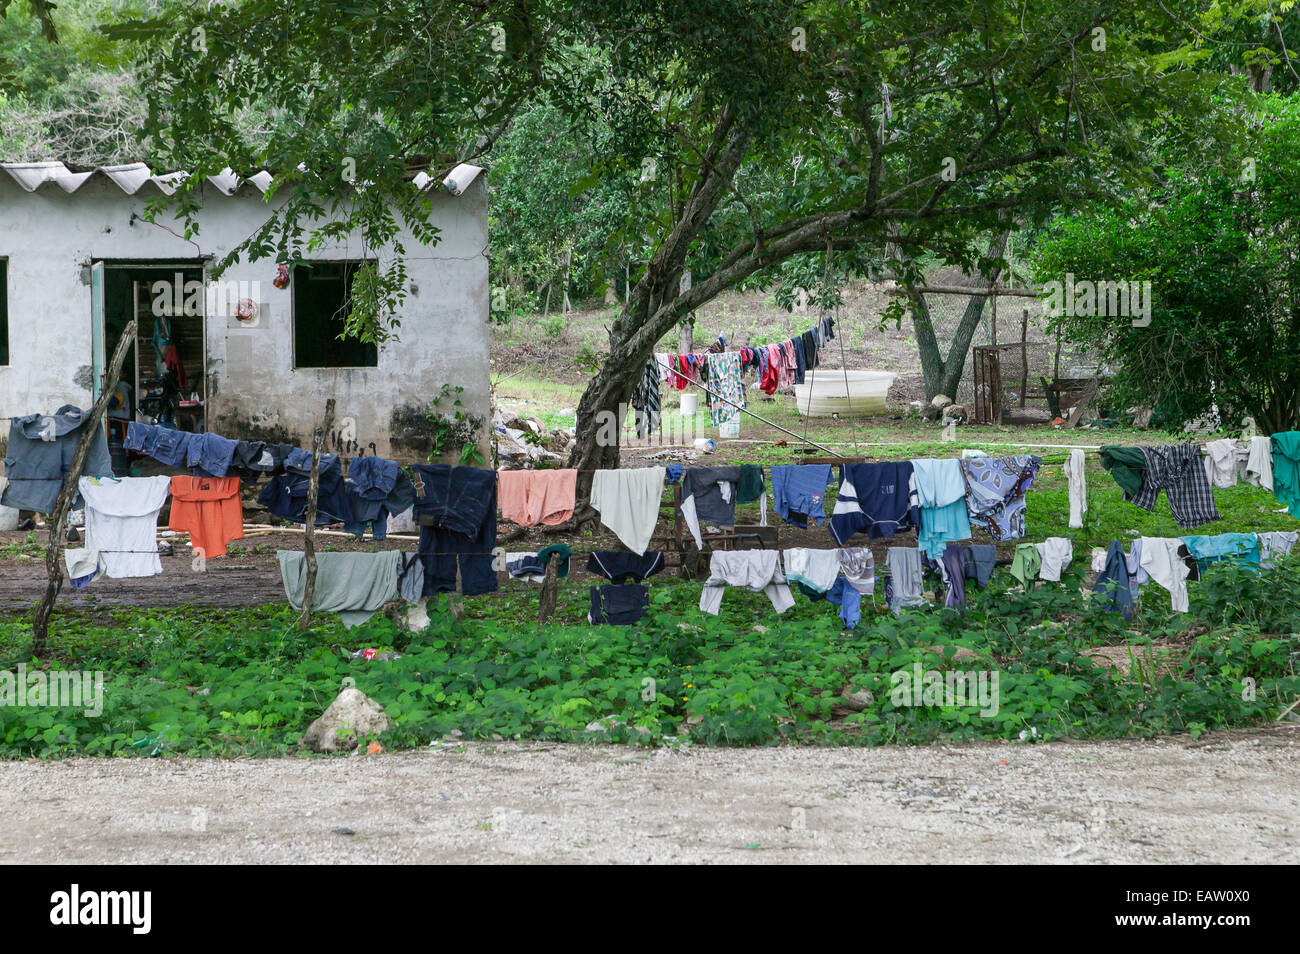 Un sacco di biancheria infilati su diverse linee a secco nel cortile anteriore della piccola casa, Stato di Campeche, Messico. Foto Stock